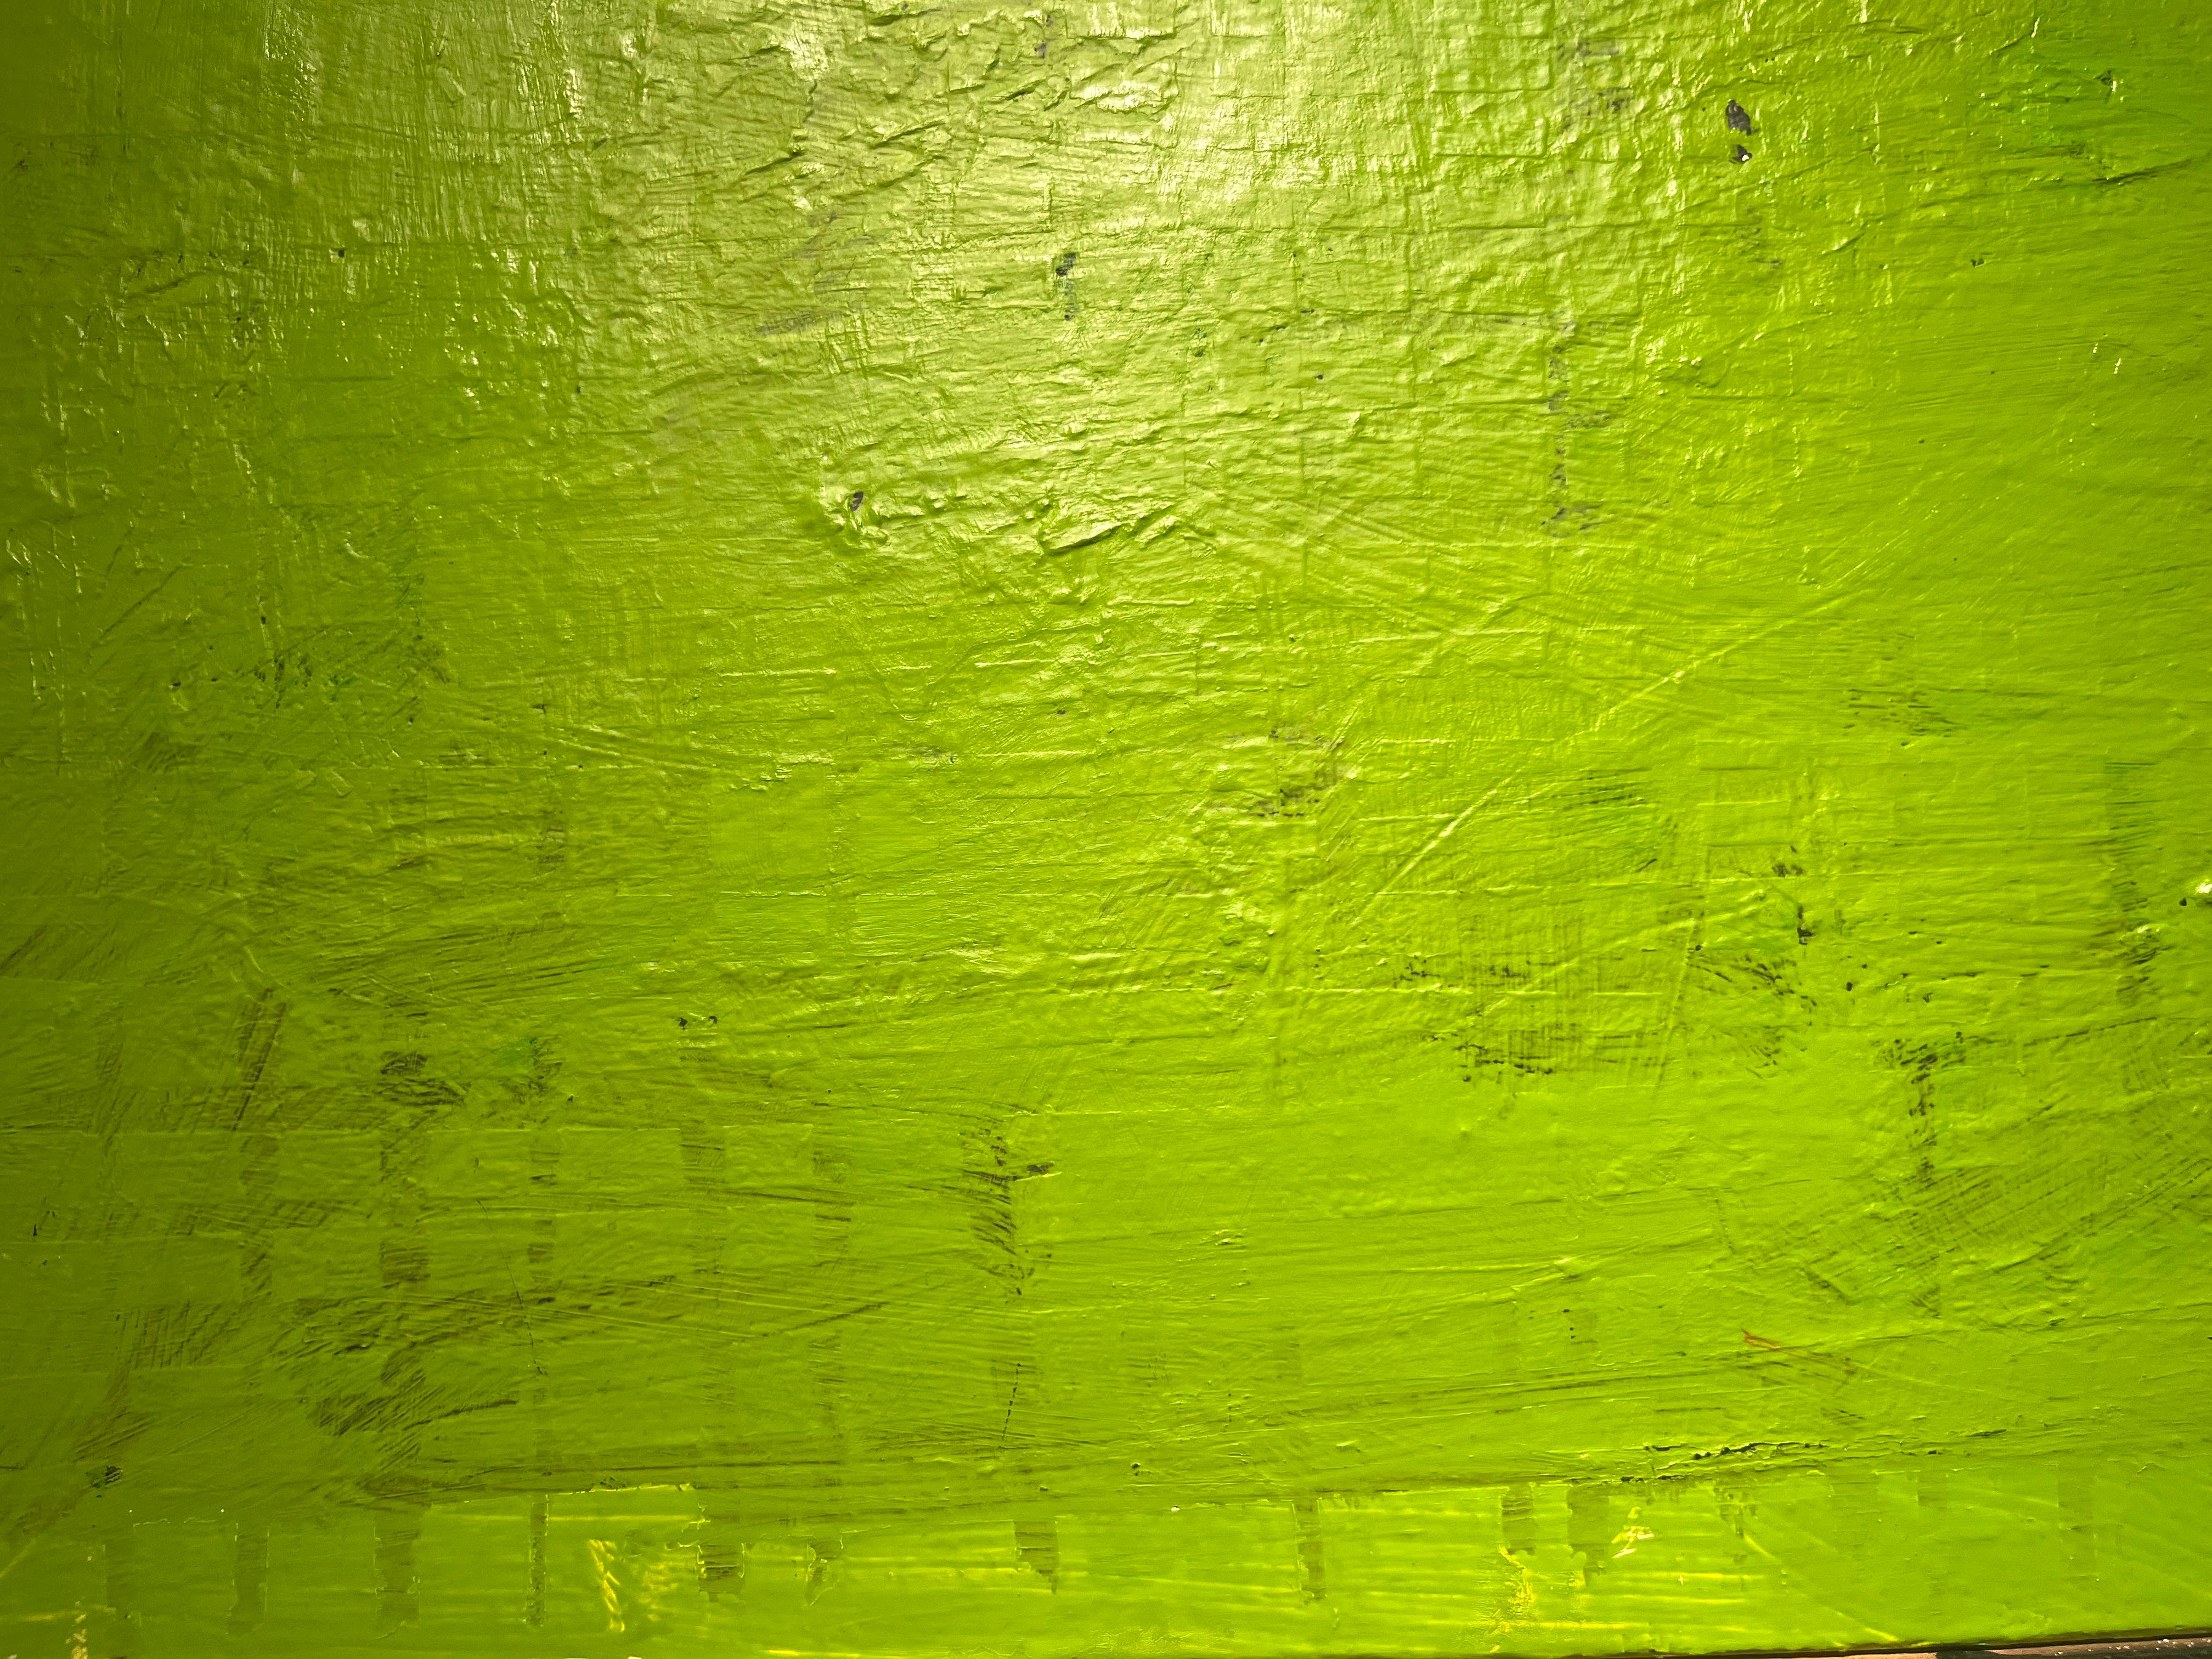 Sans titre, 2000, vert, abstrait, encadré - Néo-expressionnisme Painting par Russell Sharon